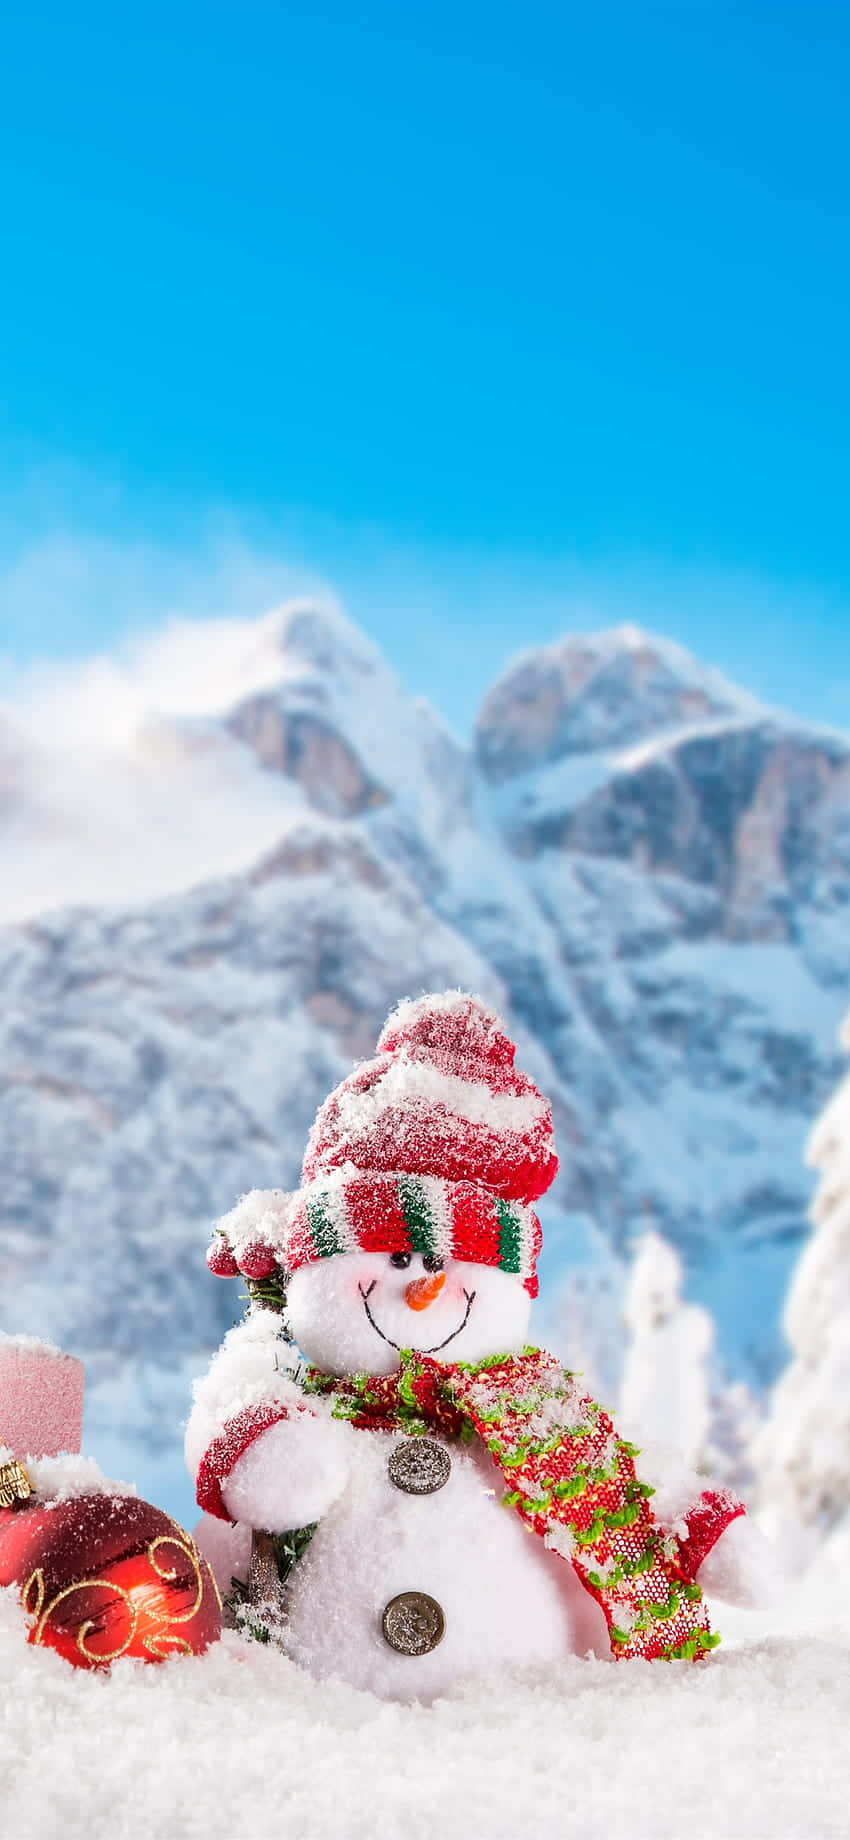 Muñecode Nieve En La Nieve Con Regalos Y Nieve Fondo de pantalla